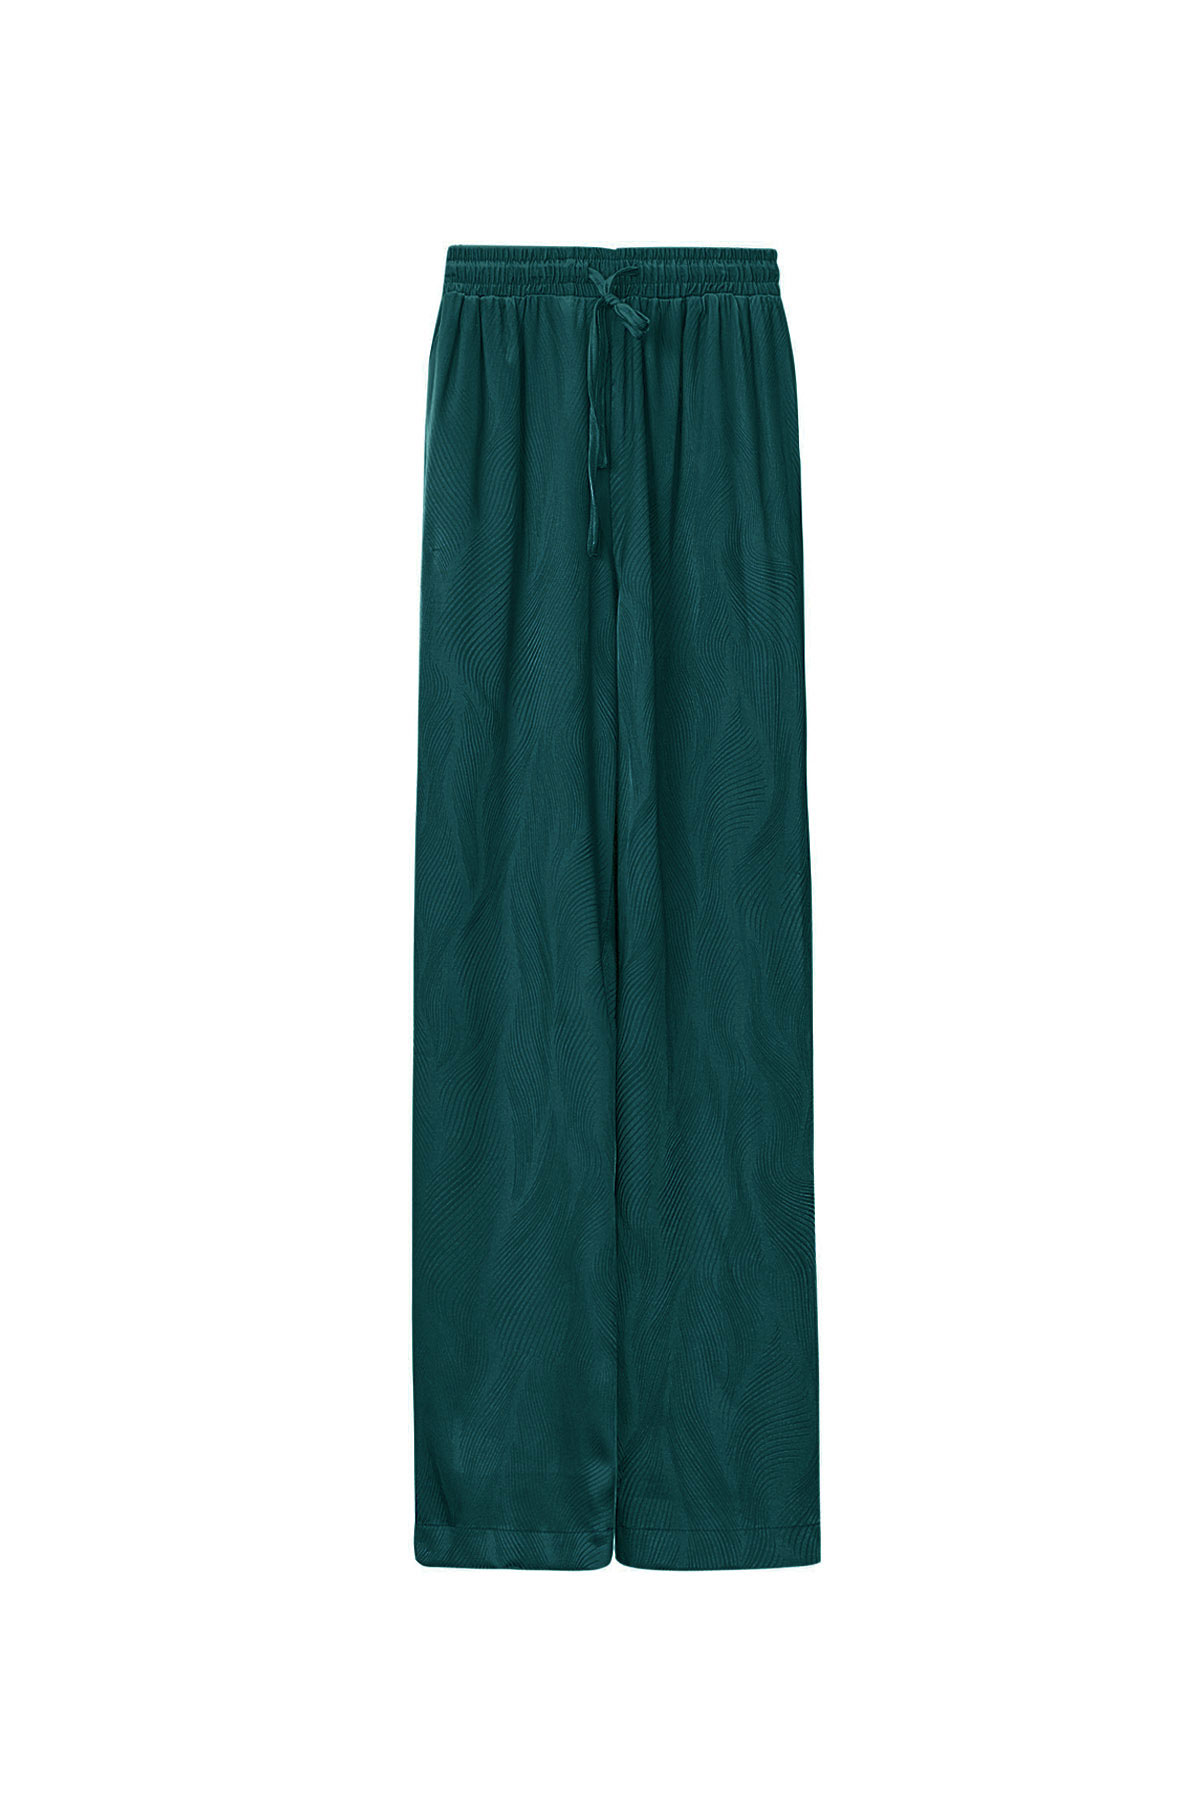 Pantalón de raso con estampado - verde oscuro - M